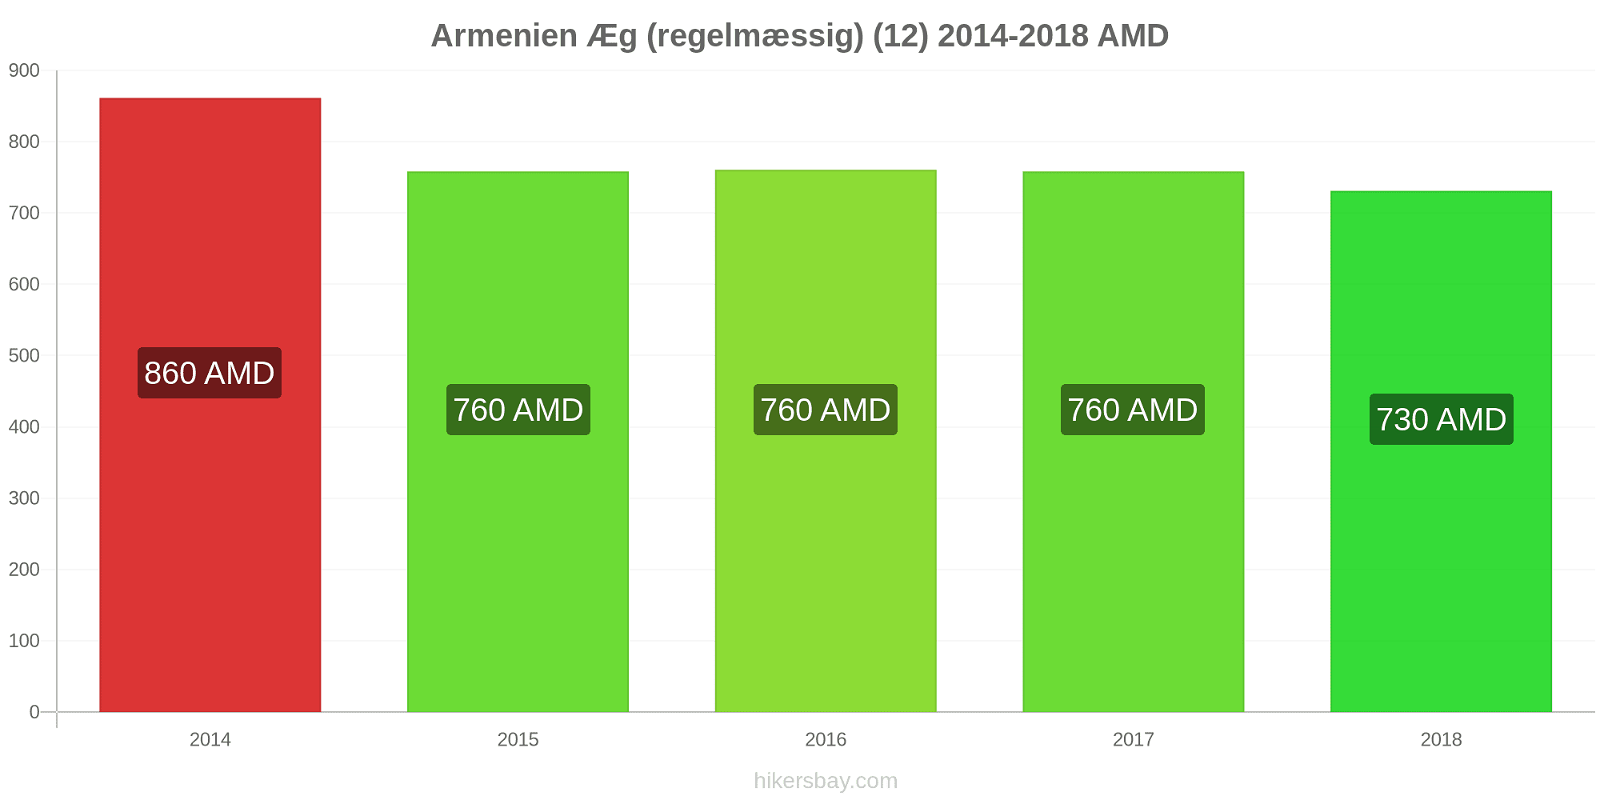 Armenien prisændringer Æg (almindelige) (12) hikersbay.com